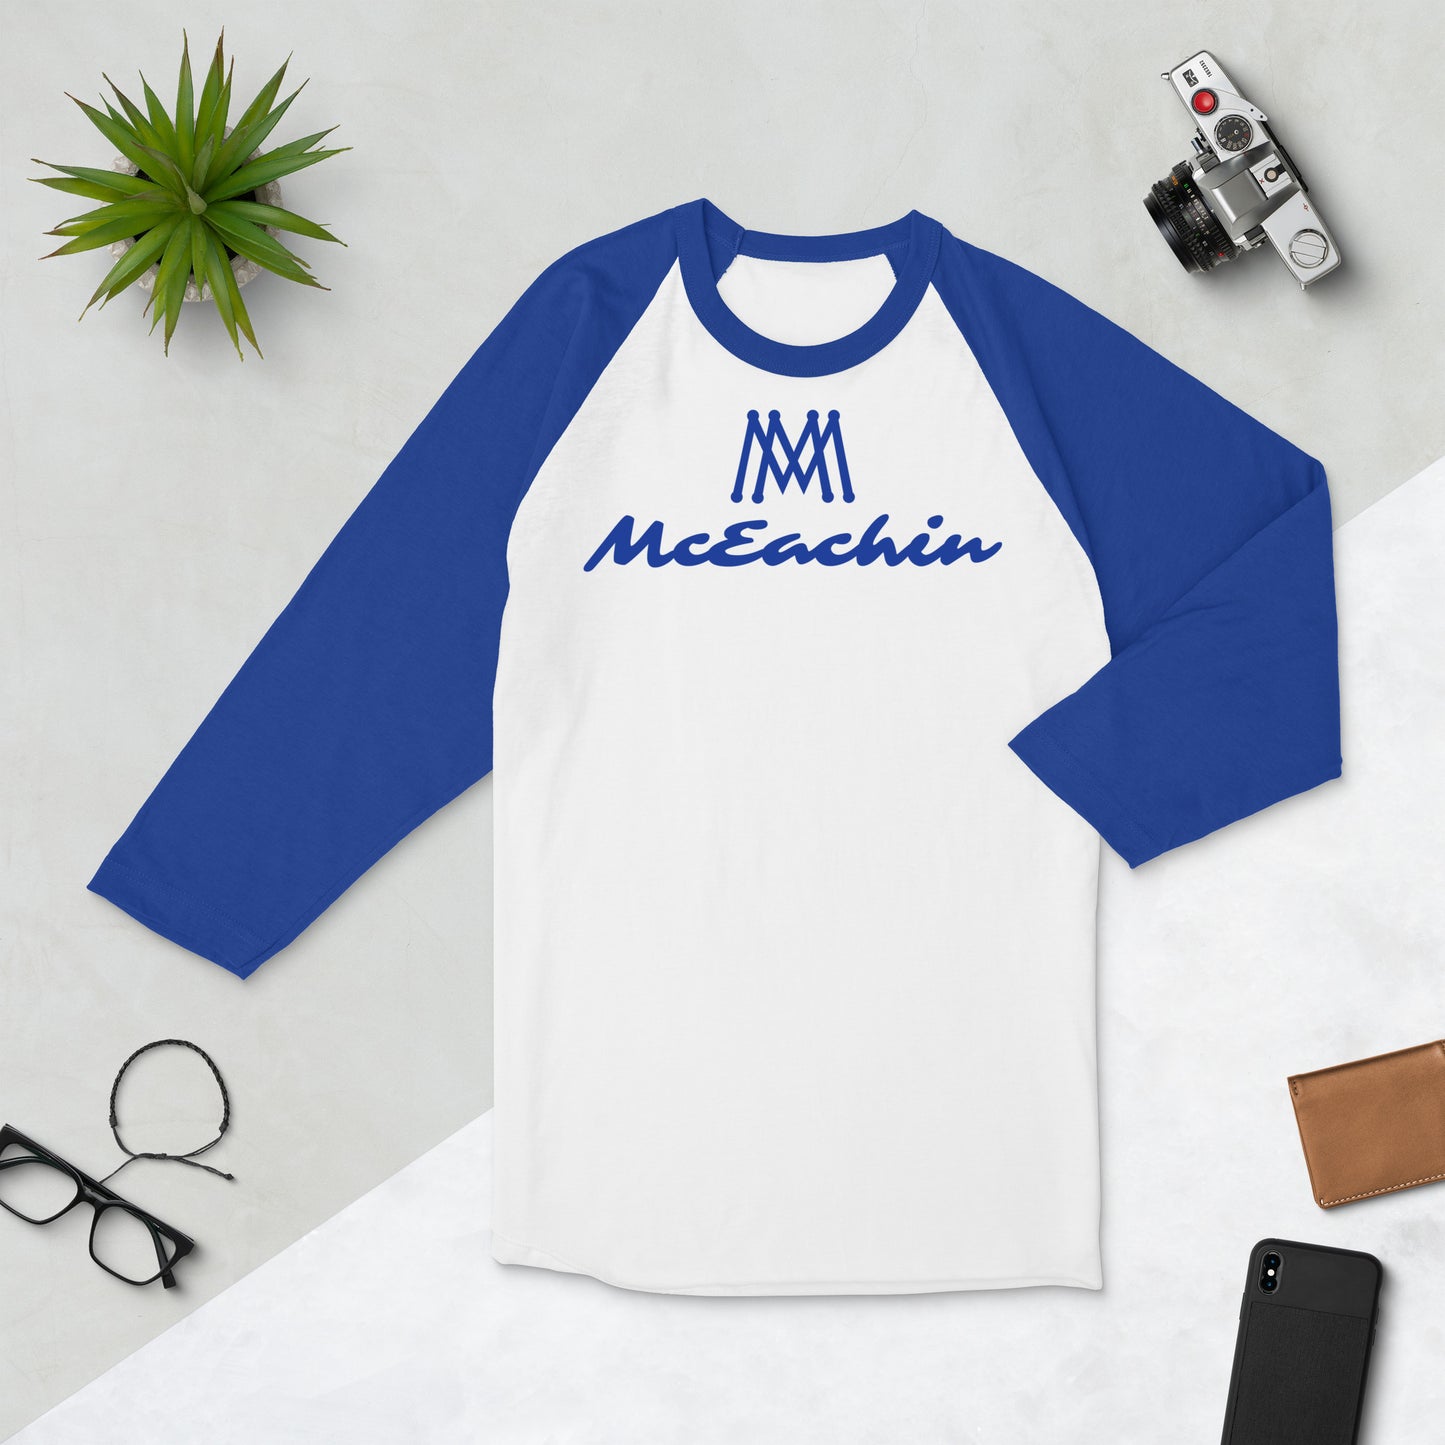 McEachin 3/4 Sleeve Raglan Shirt White/Blue